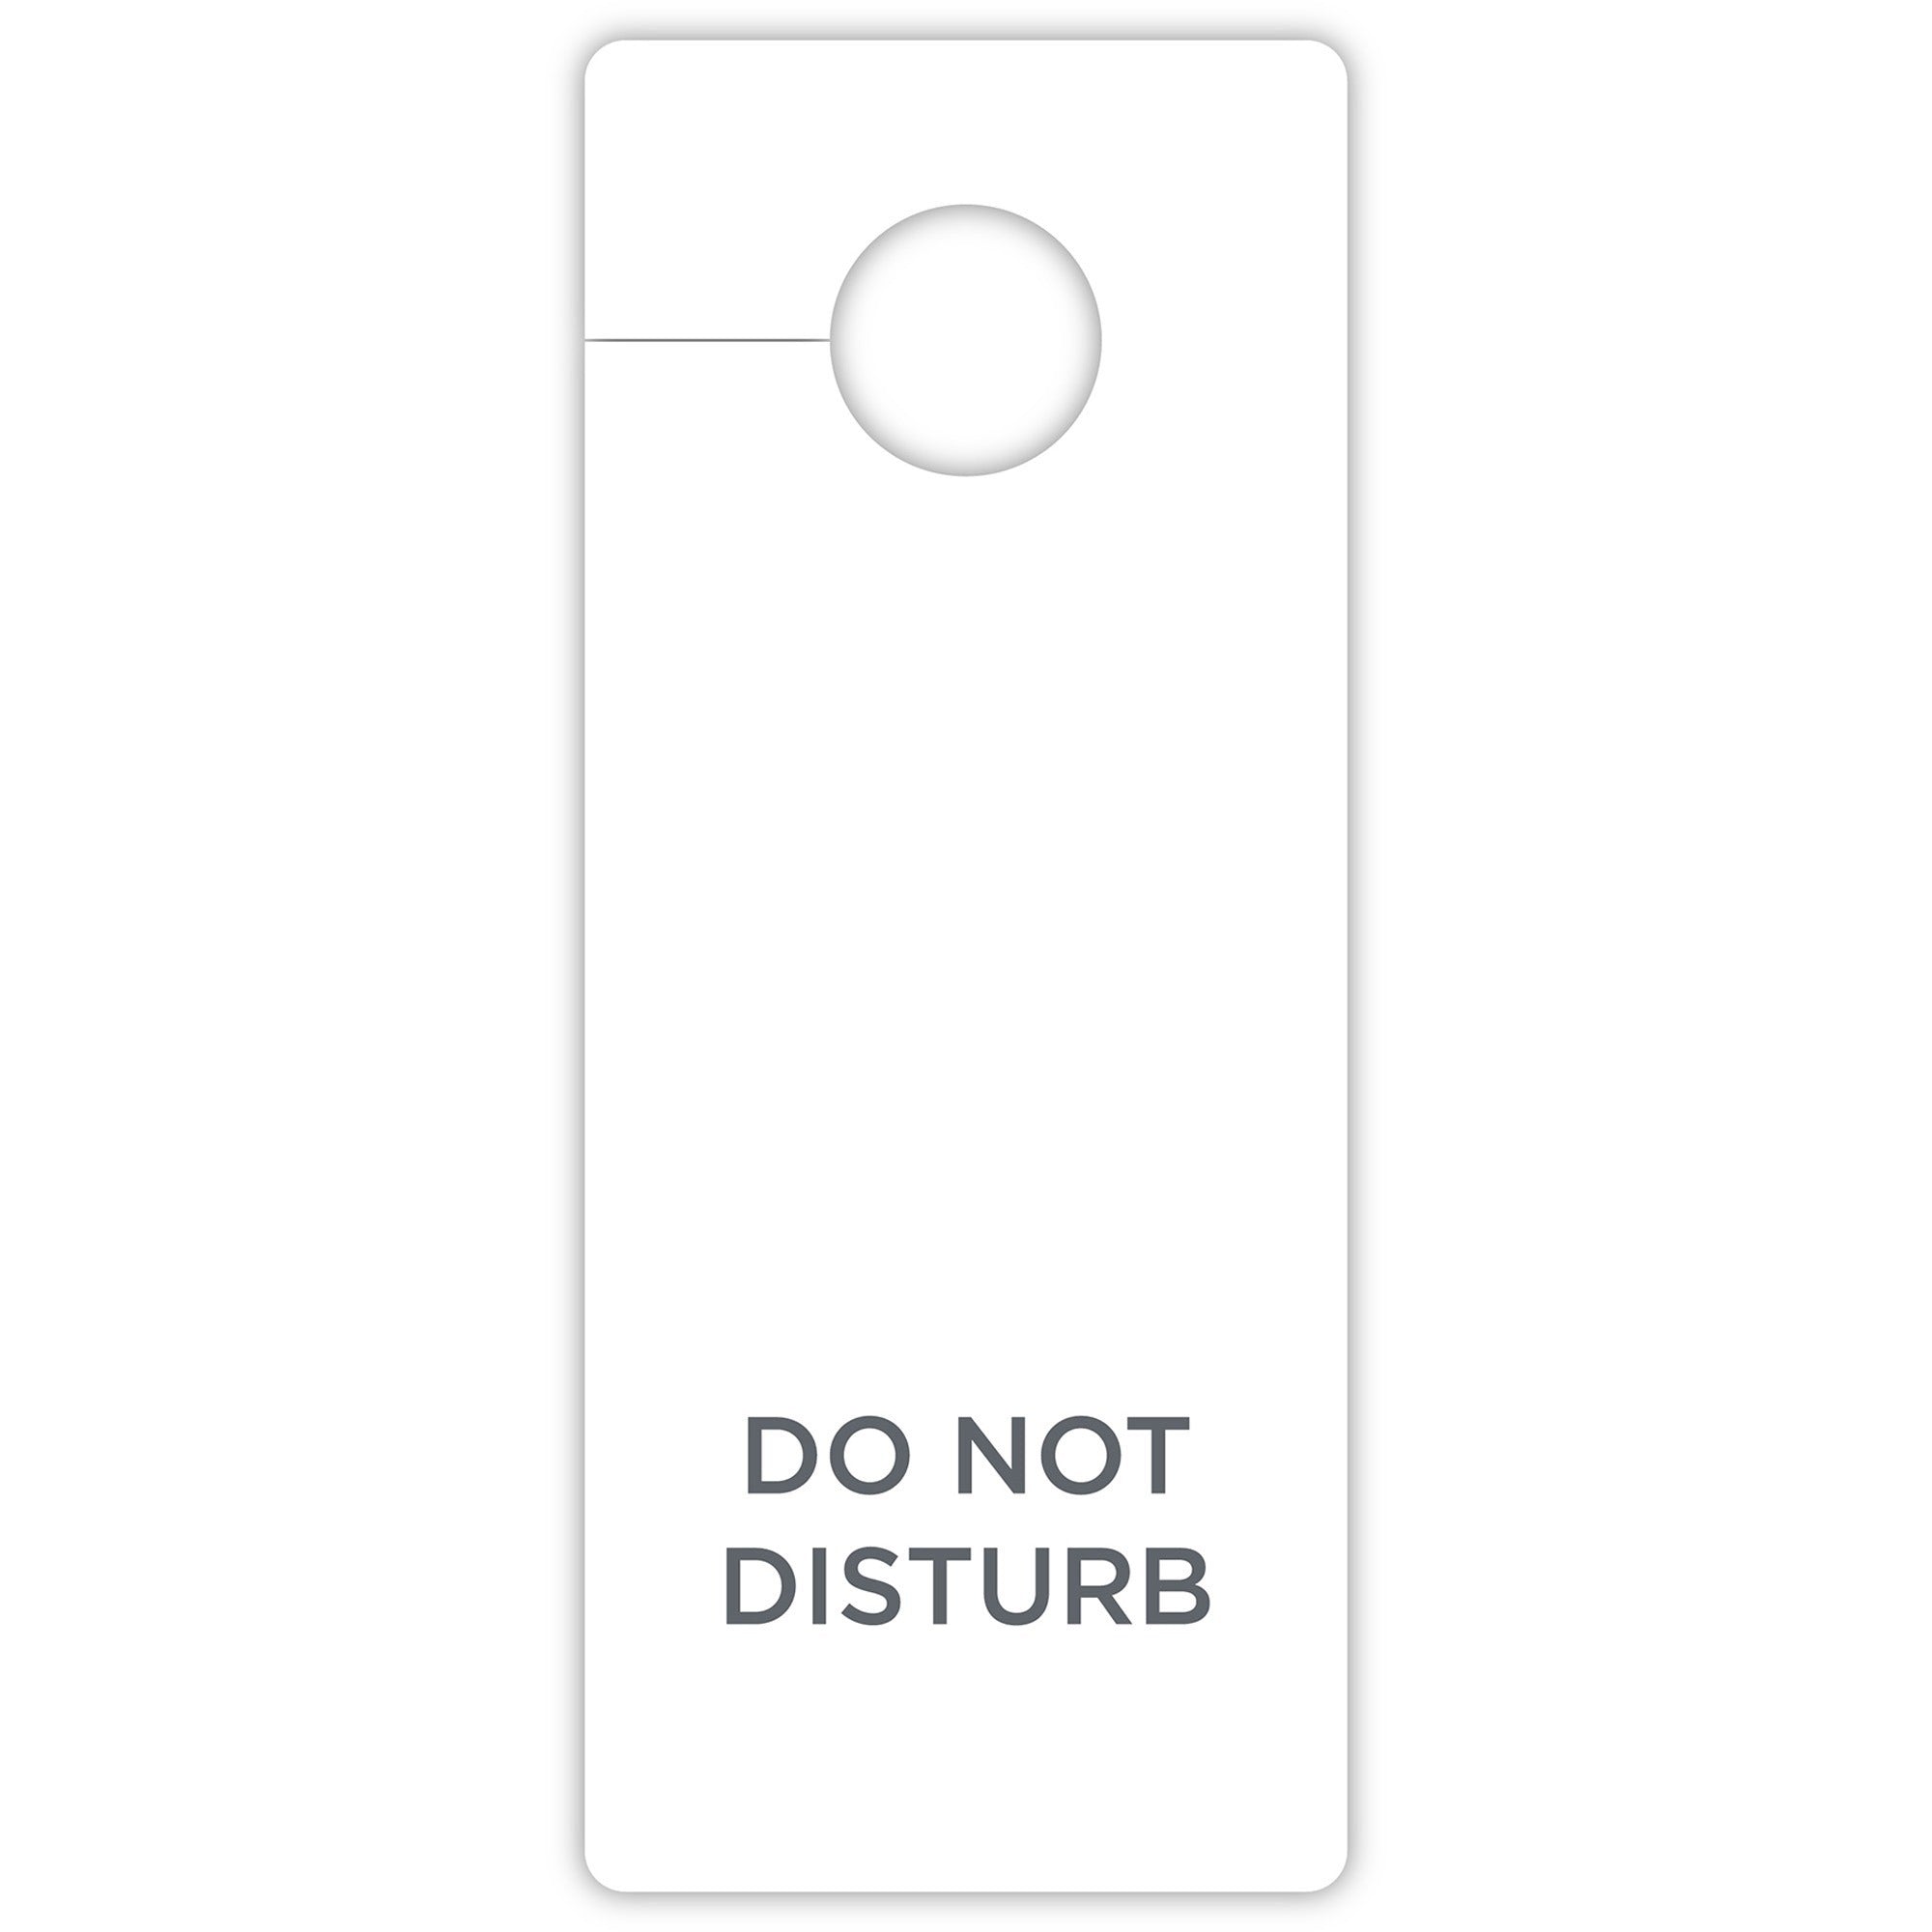 rdi-do-not-disturb-hang-sign-100-carton-do-not-disturb-print-message-3-width-x-8-height-rectangular-shape-hanging-hole-printable-white_cfpdndgen100 - 1